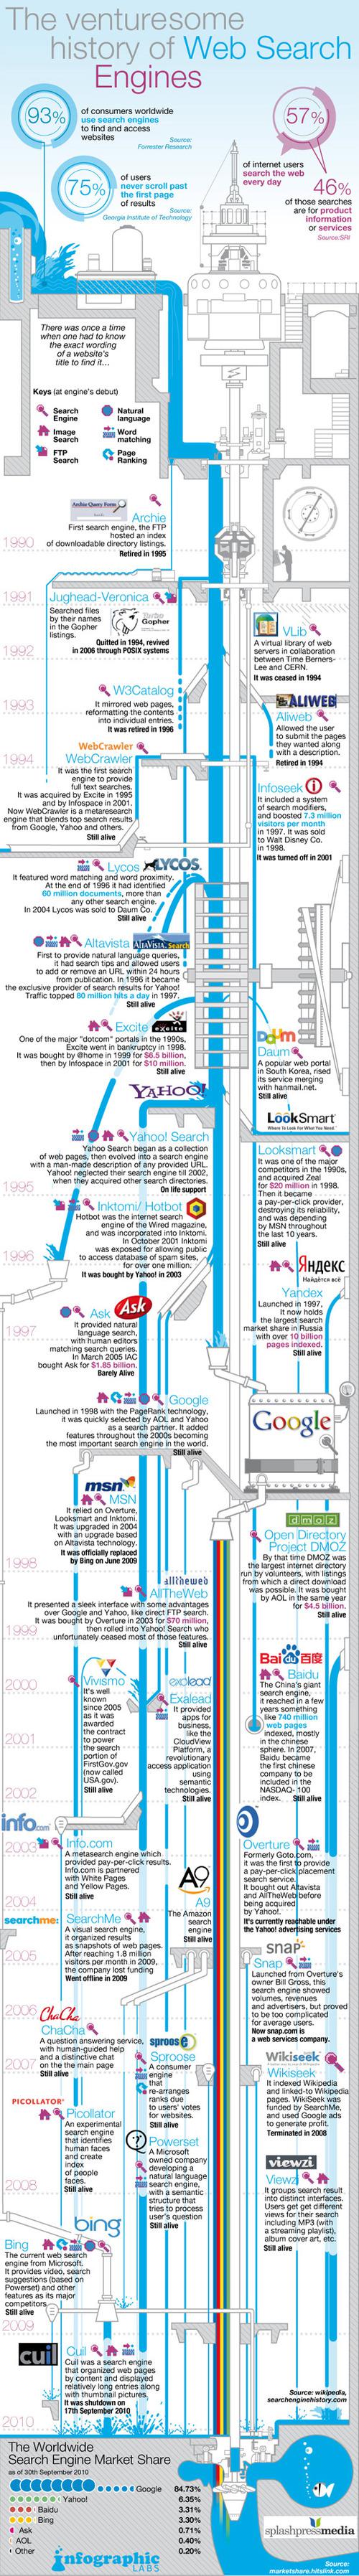 Infographie sur l'histoire des moteurs de recherche